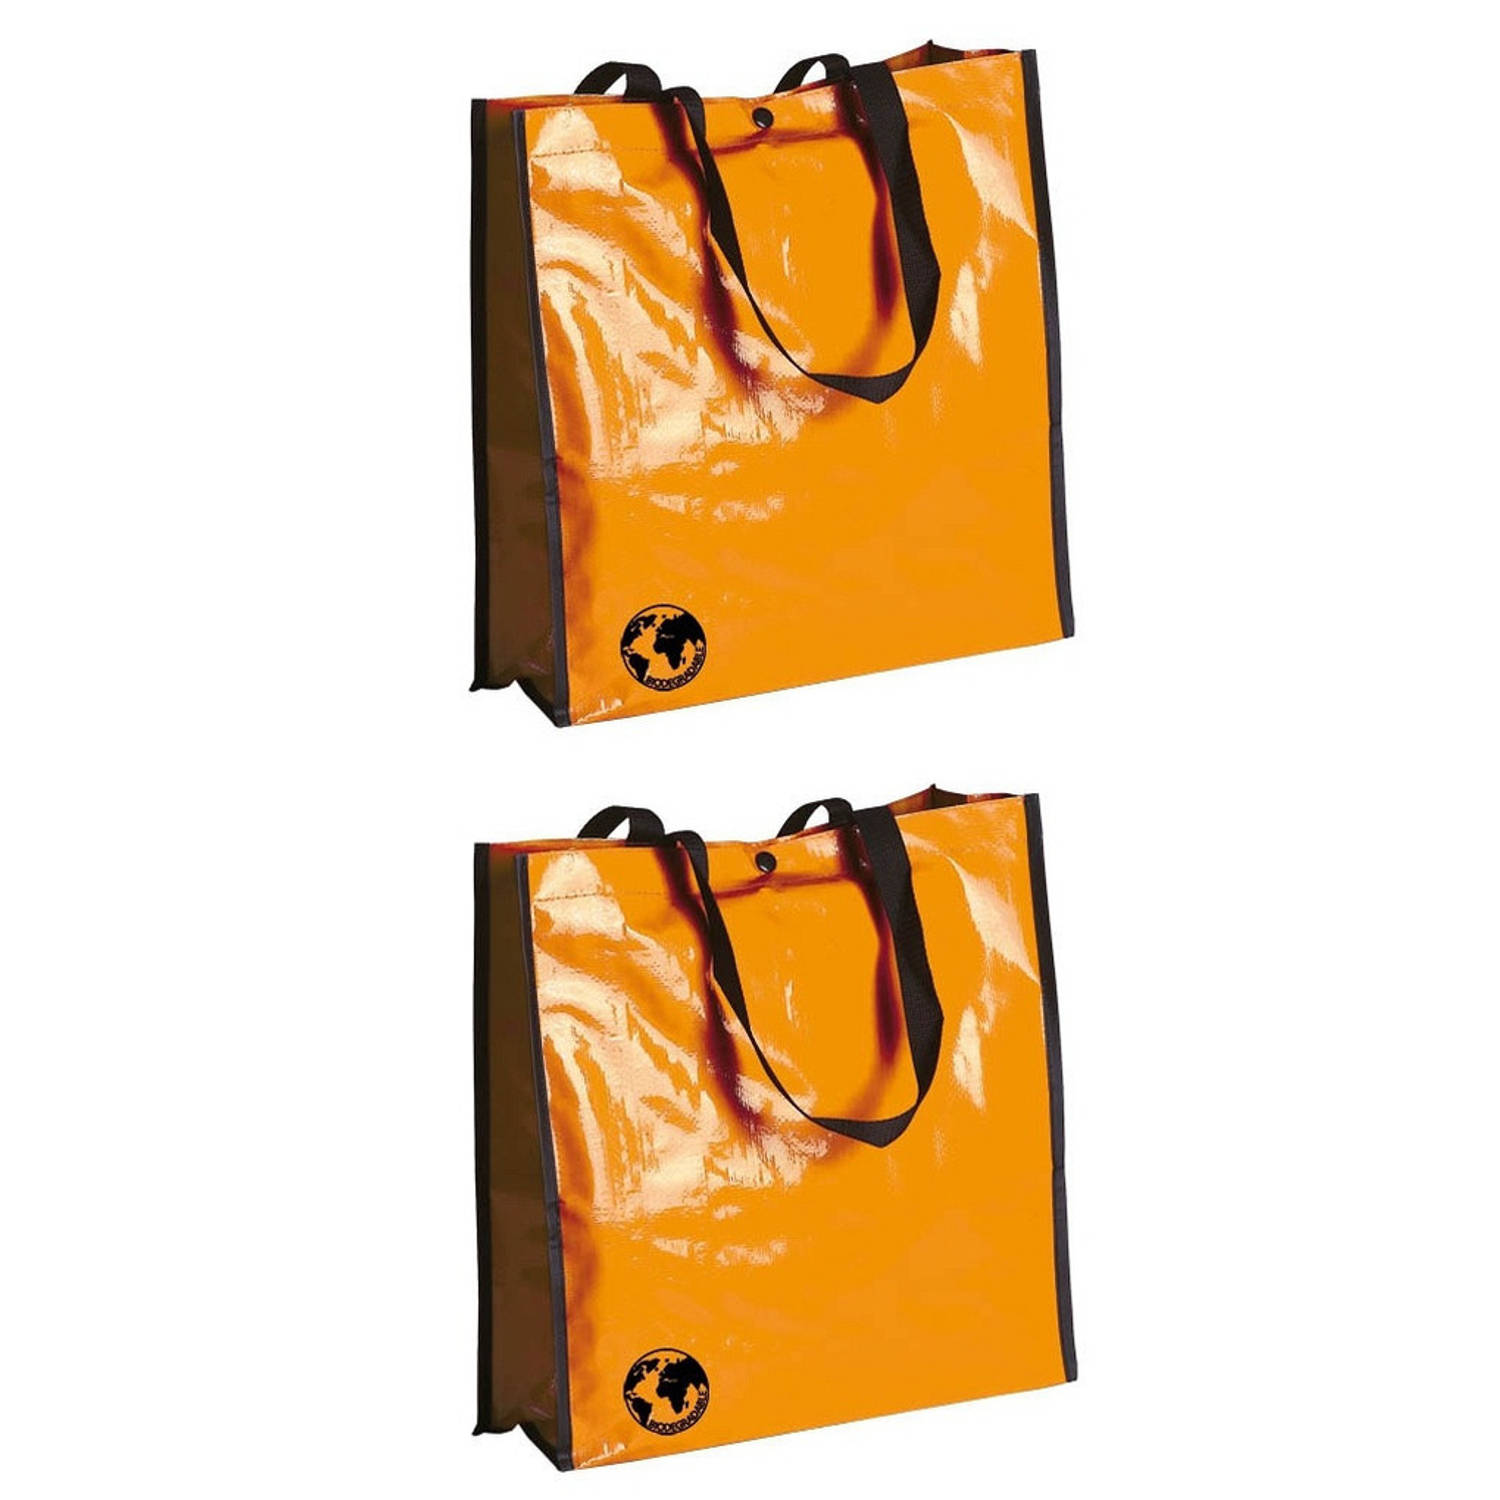 Hulpeloosheid Hertogin Decoderen 2x stuks eco shopper boodschappen opberg tassen oranje 38 x 38 cm -  Shoppers | Blokker